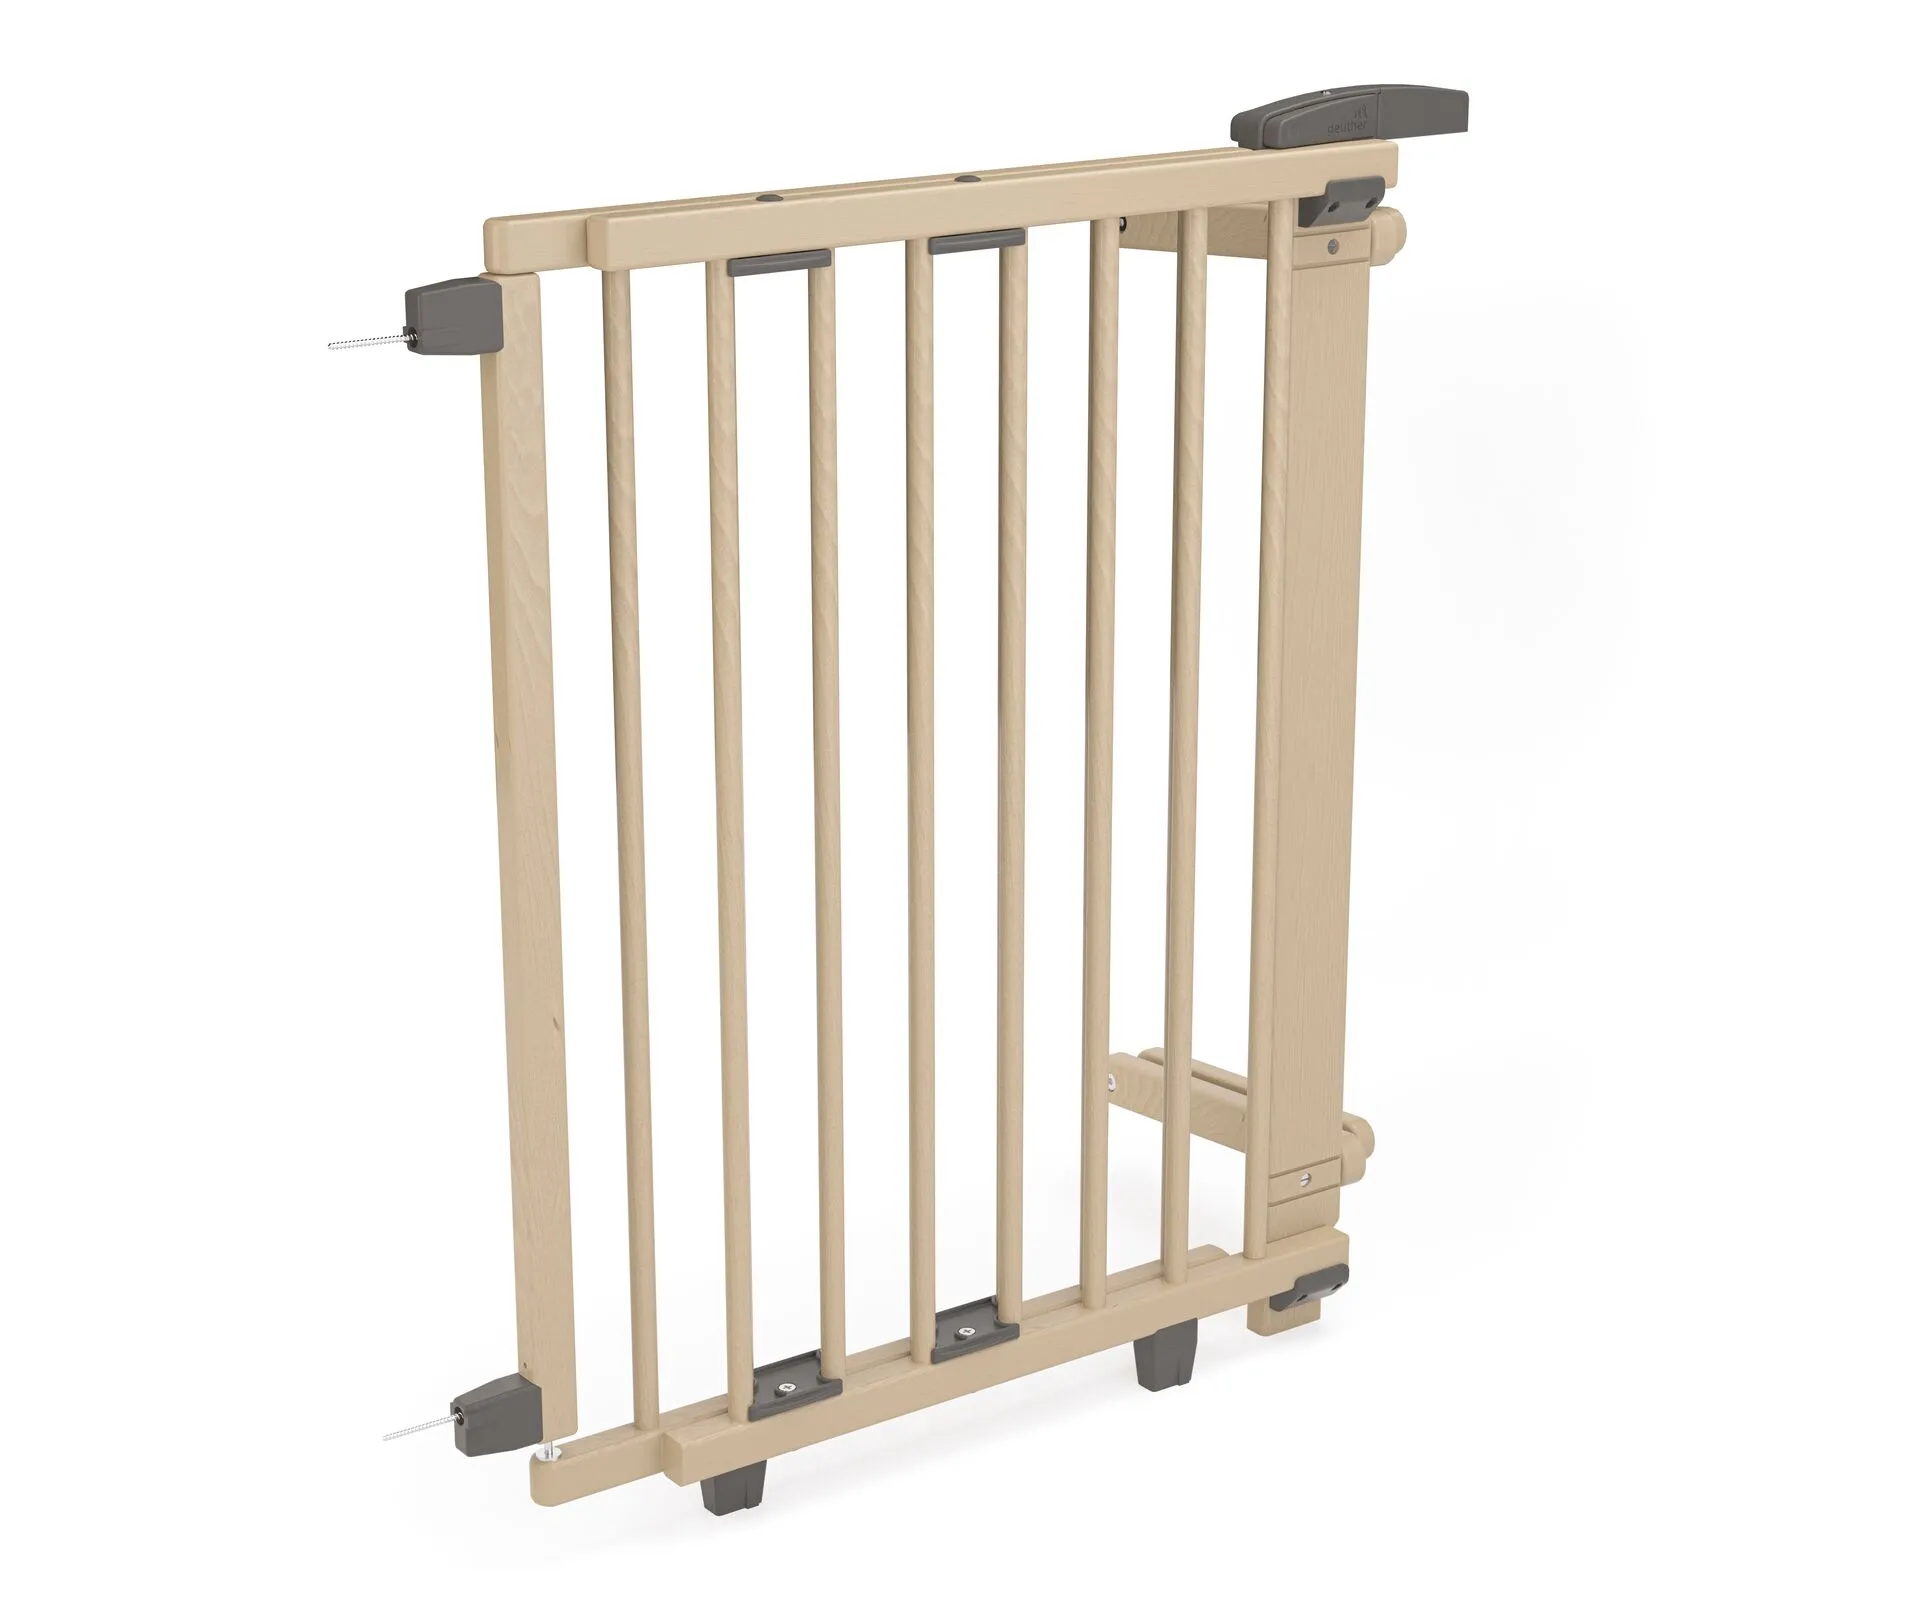 Rundstab Treppenschutzgitter 2733 für Öffnungen von 67-107 cm aus Holz